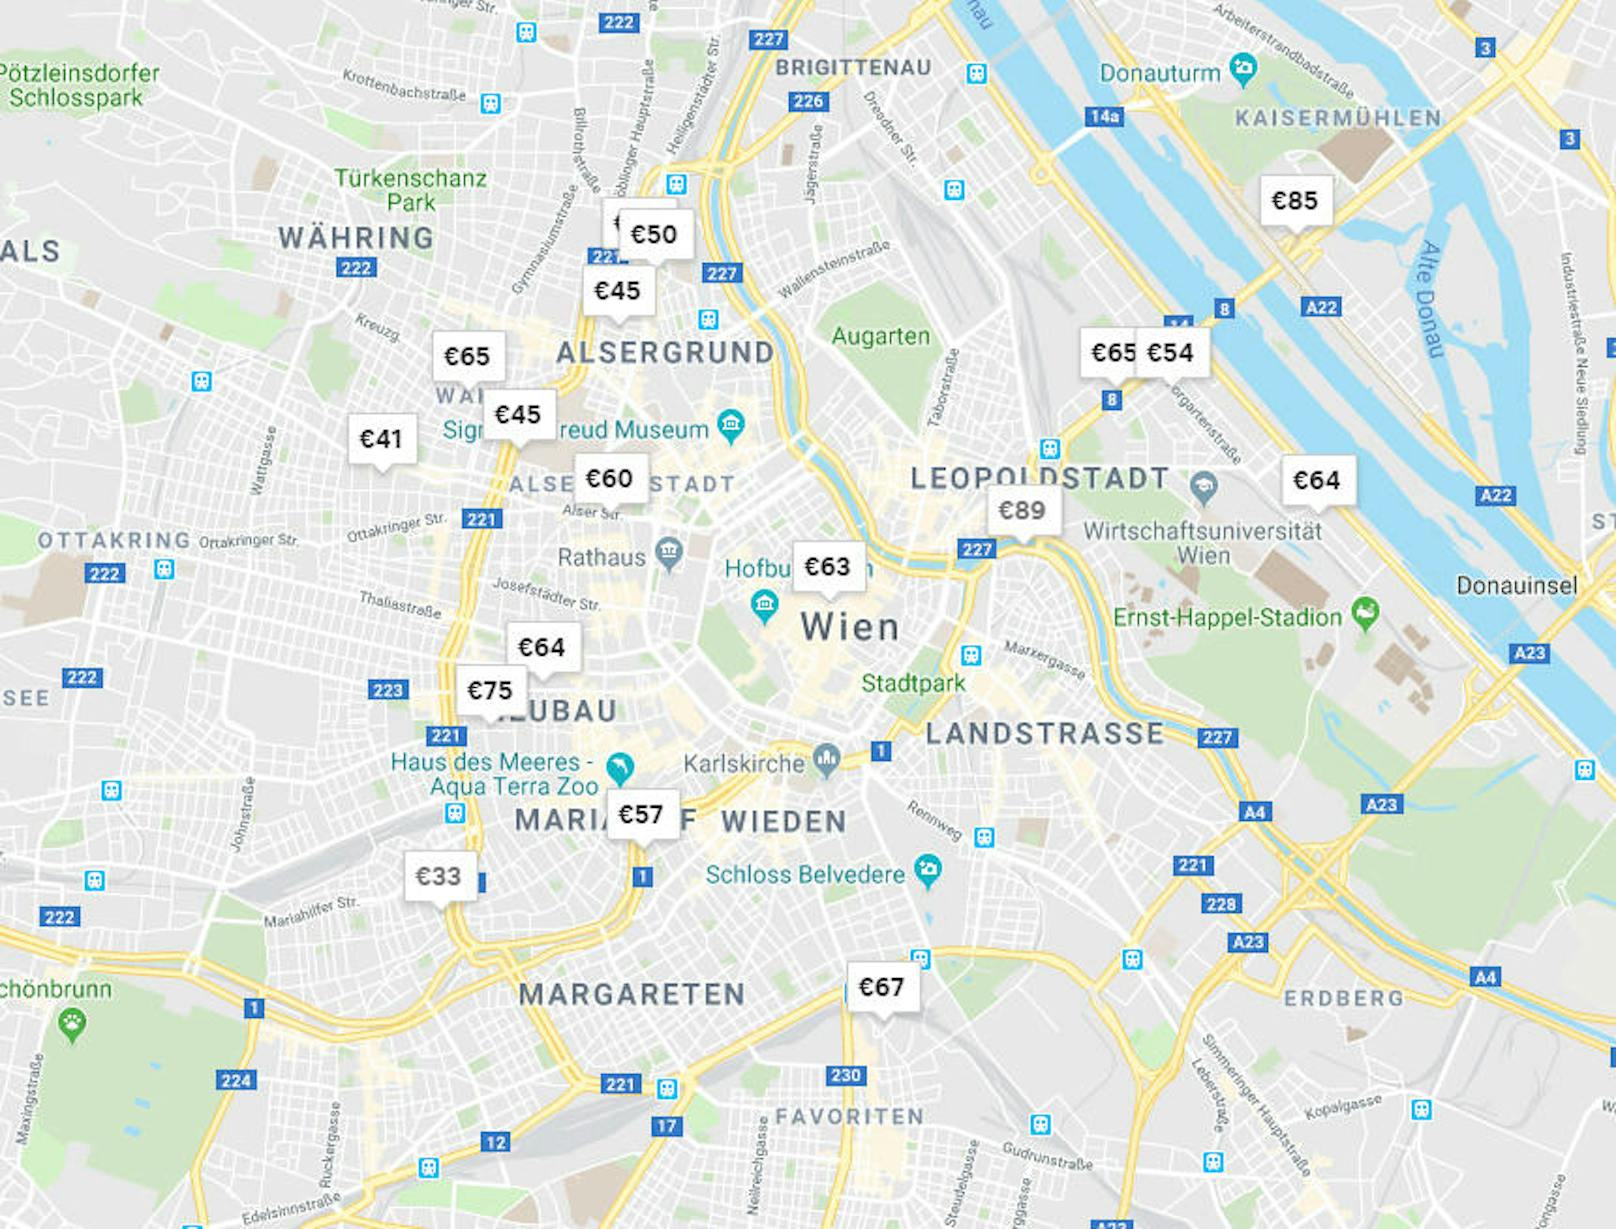 Die Preise von "Airbnb"-Wohnungen in Wien variieren stark. Sie liegen - je nach Bezirk und Dauer - zwischen 33 Euro und 89 Euro pro Nacht.